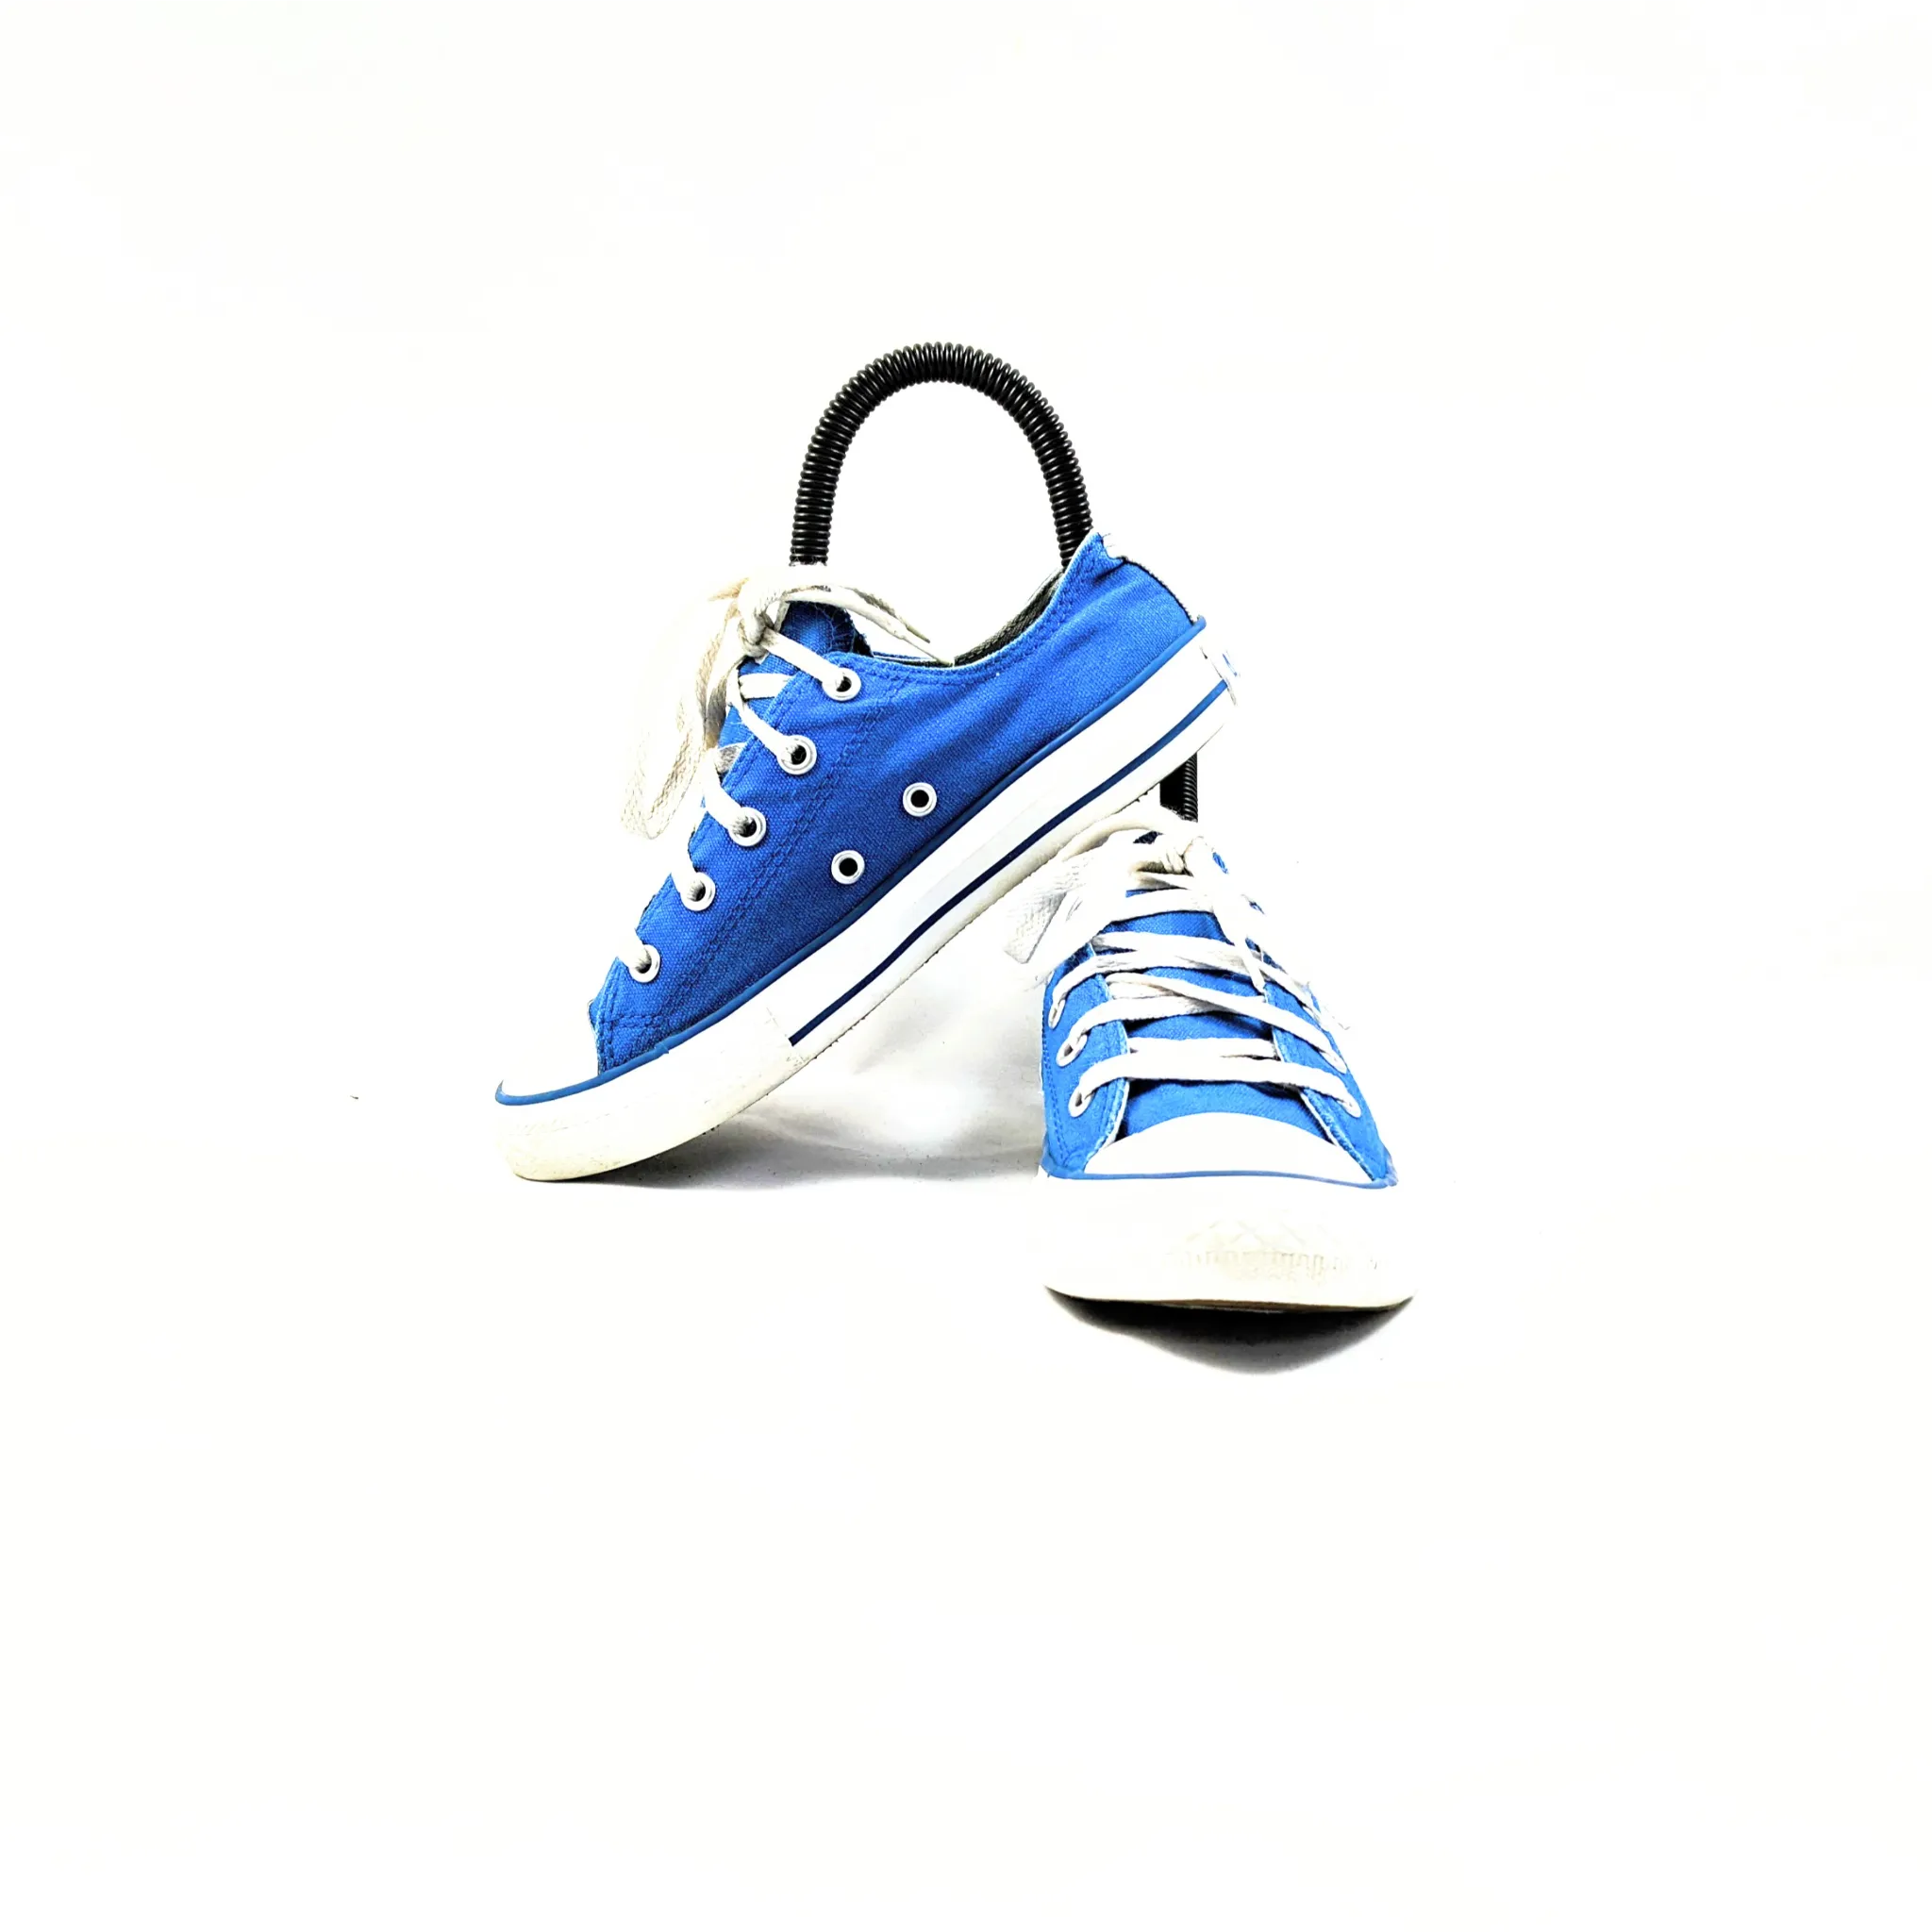 حذاء كونفرس باللون الأزرق